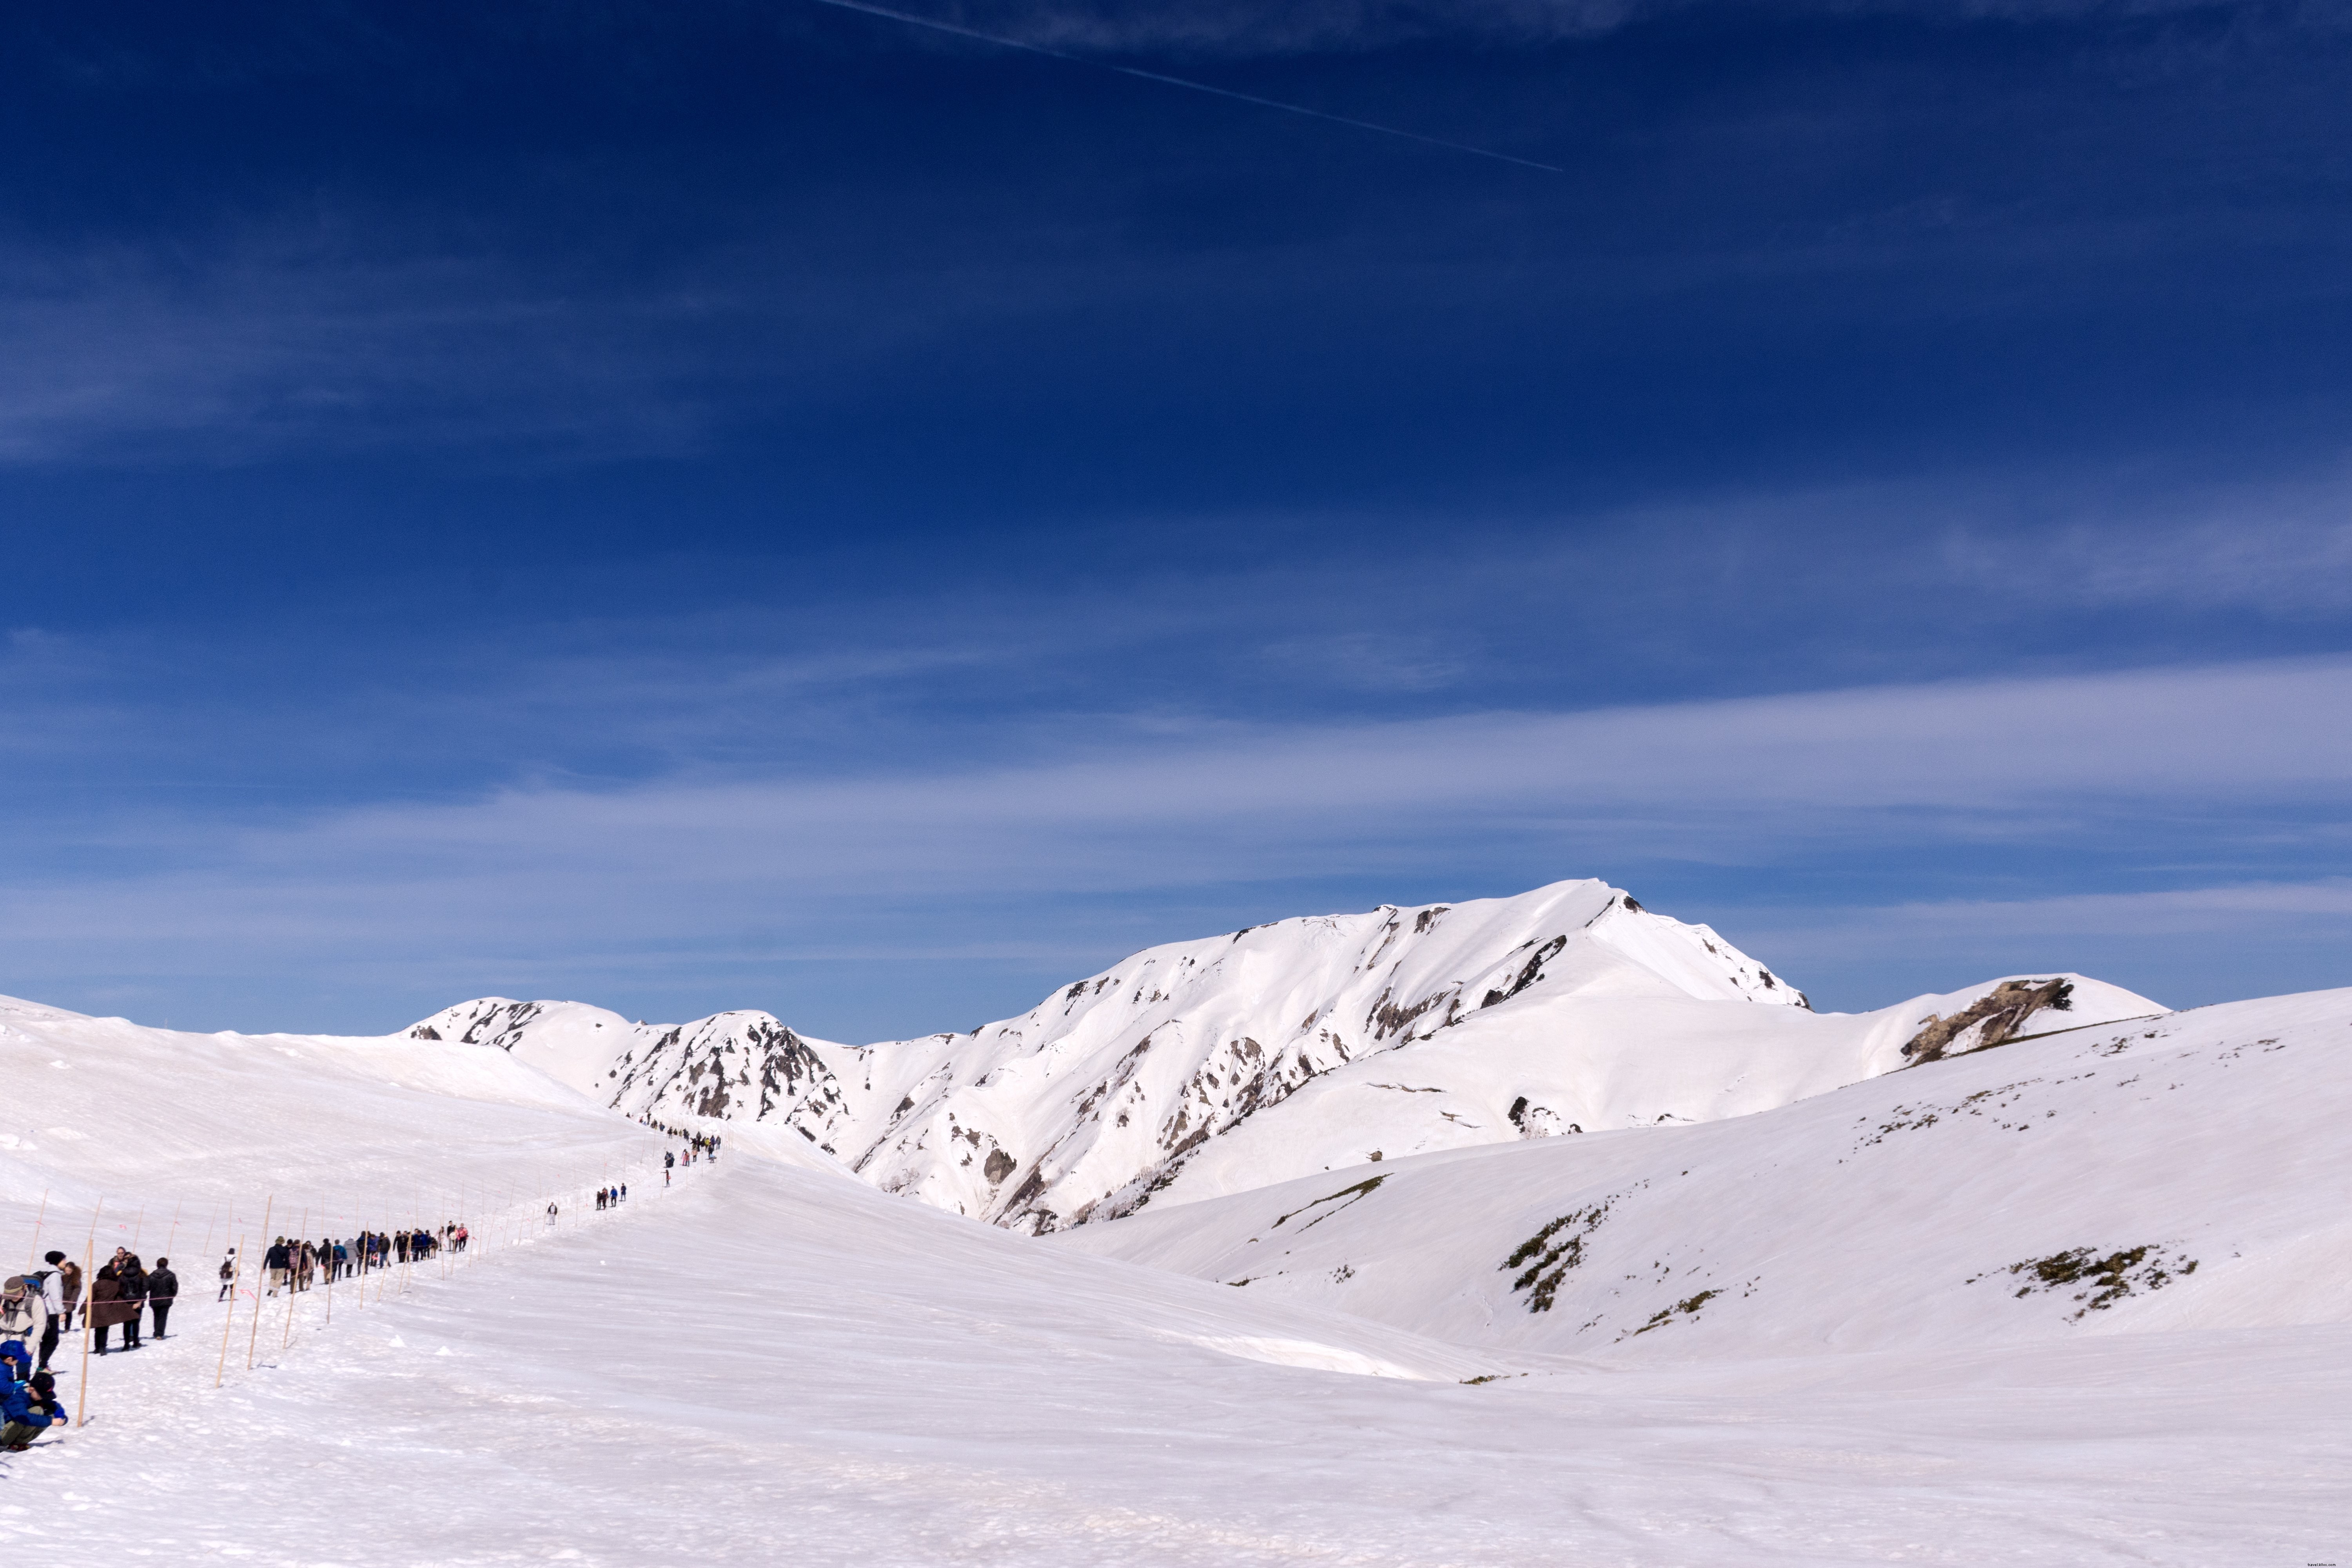 Una línea de excursionistas viaja a través de la foto de las montañas cubiertas de nieve